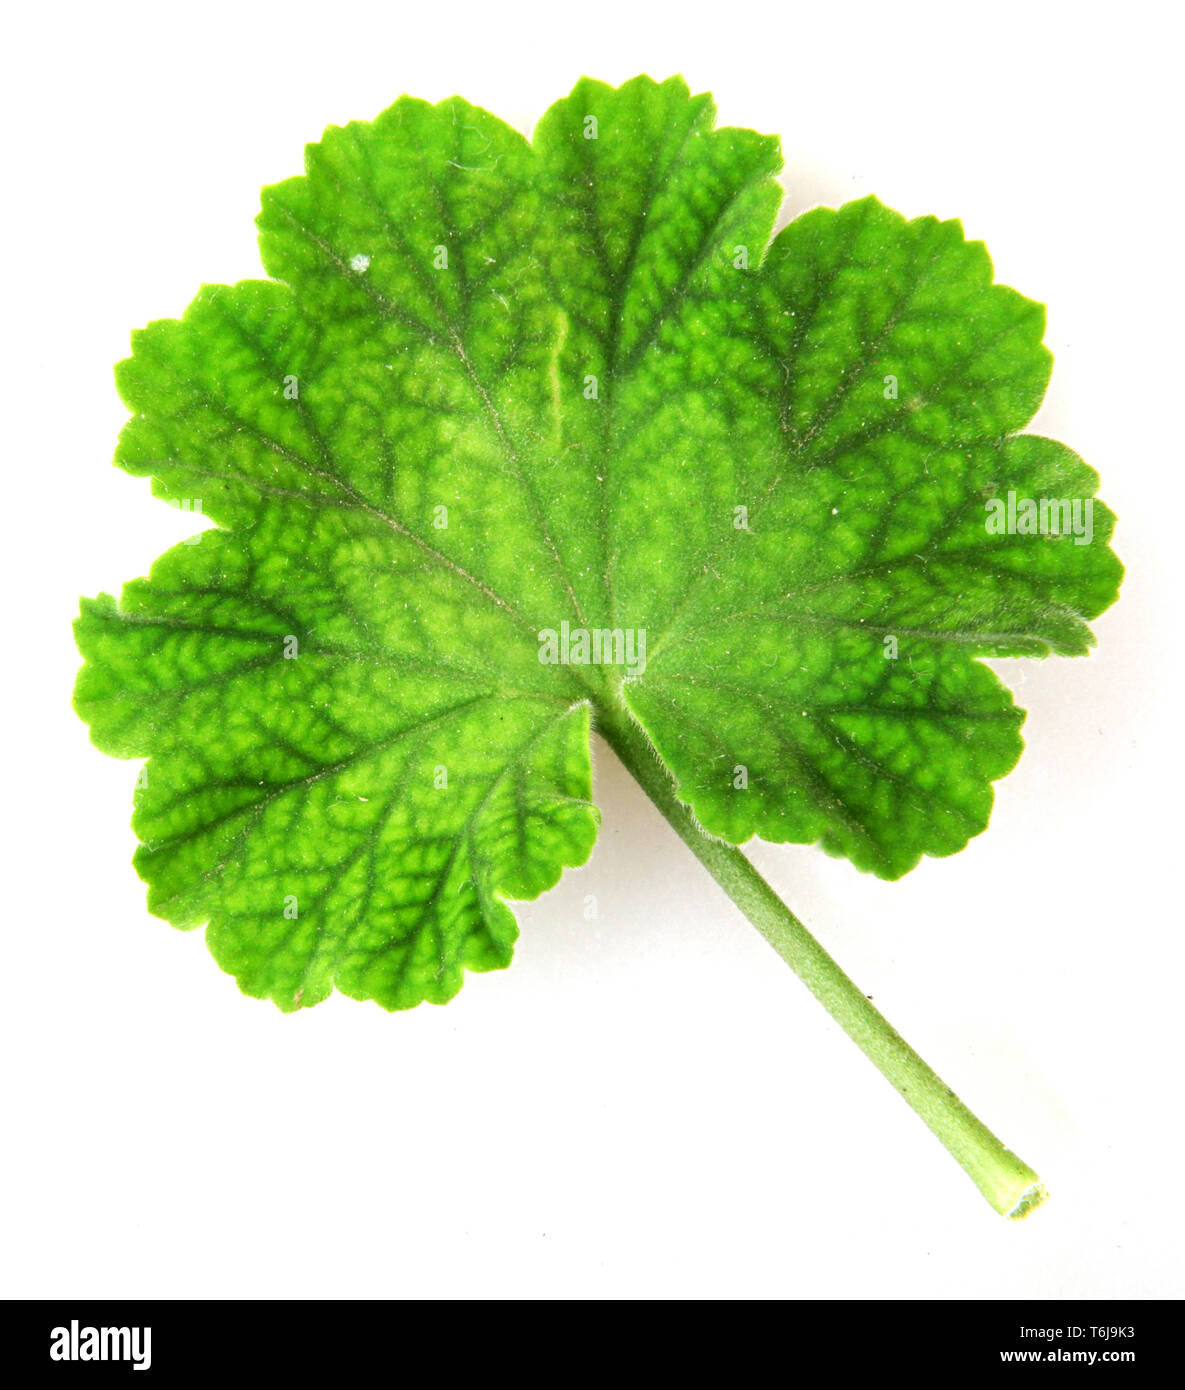 Geranium Pelargonium Leaf Stock Photo